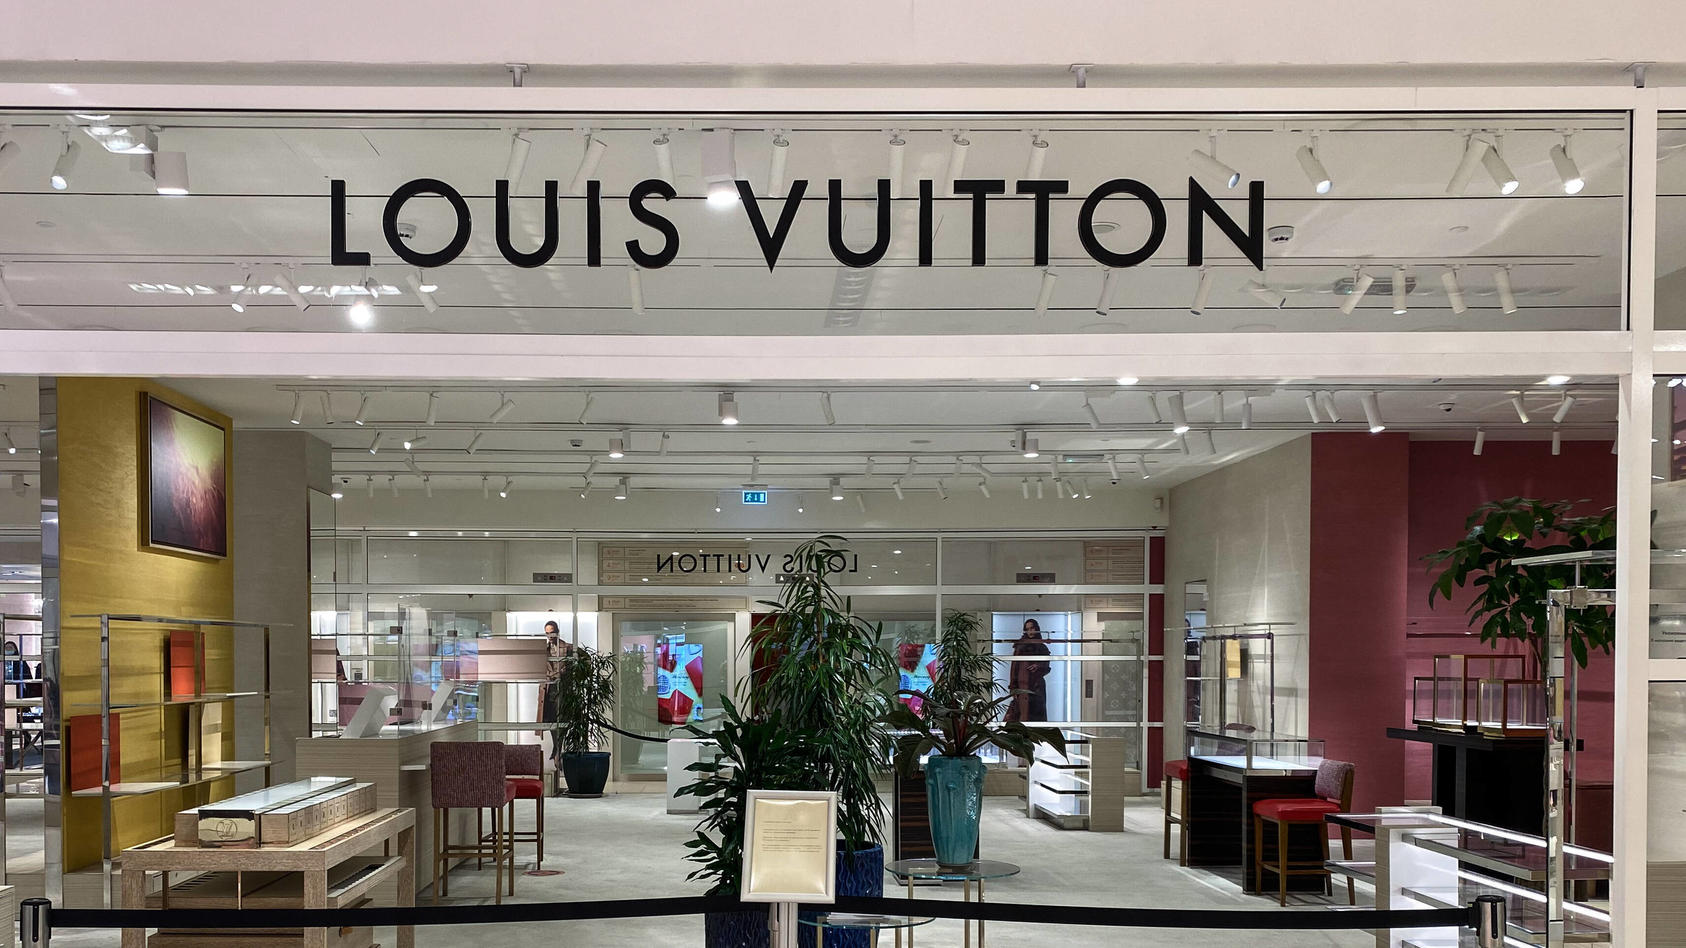 Außenansicht eines Louis Vuitton Shops